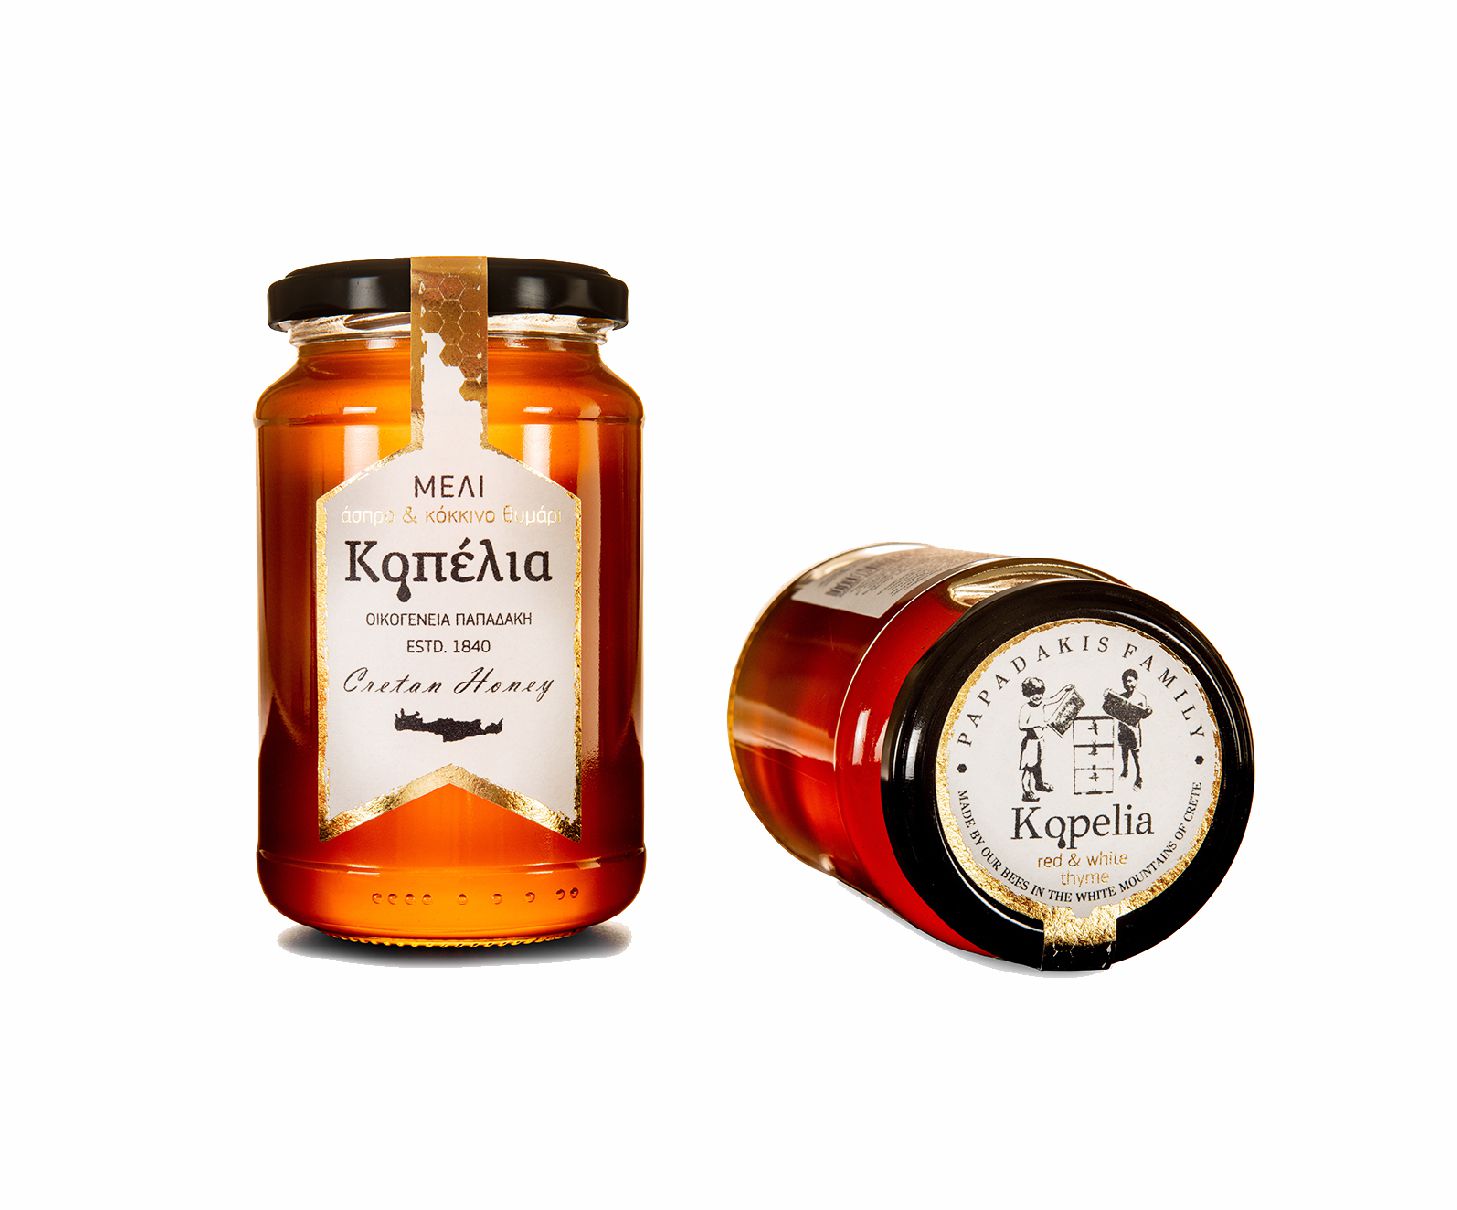 Μέλι από Άσπρο και κόκκινο θυμάρι οικογένεια Παπαδάκη "Κοπελια" . 950 γρ.